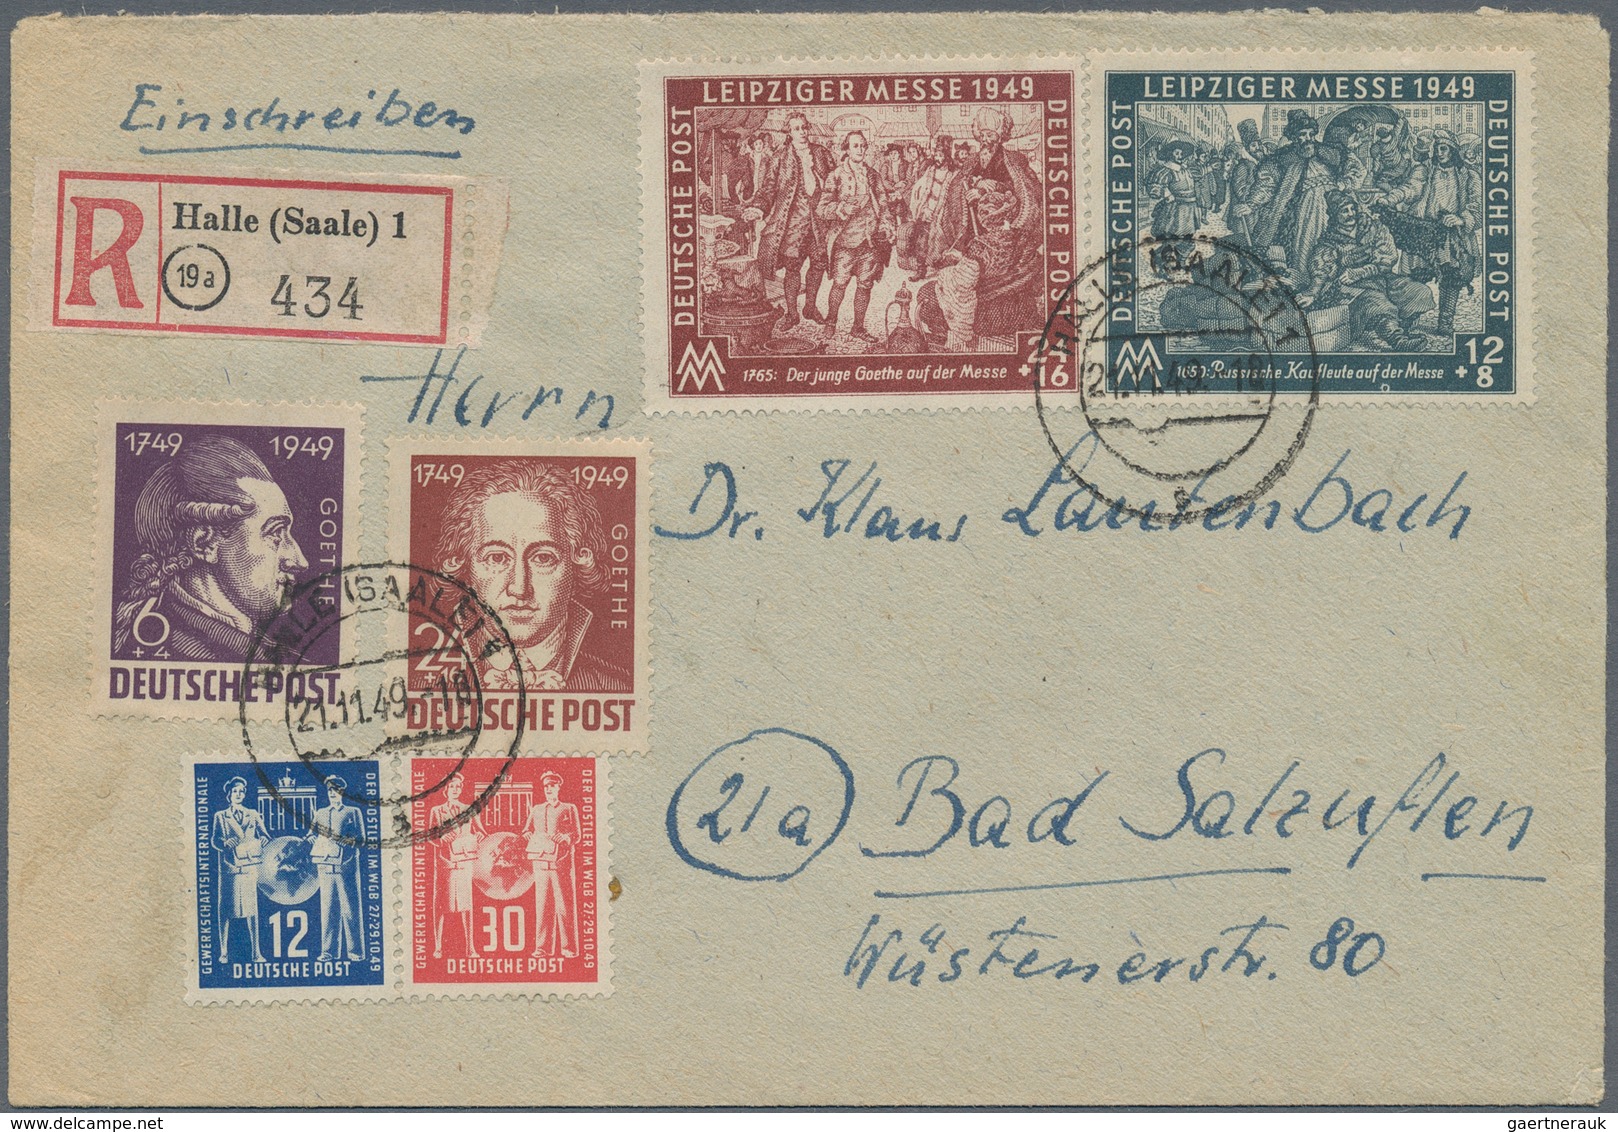 Sowjetische Zone: 1945/1950, sehr vielseitiger und ergiebiger Posten von ca. 380 Briefen und Karten,